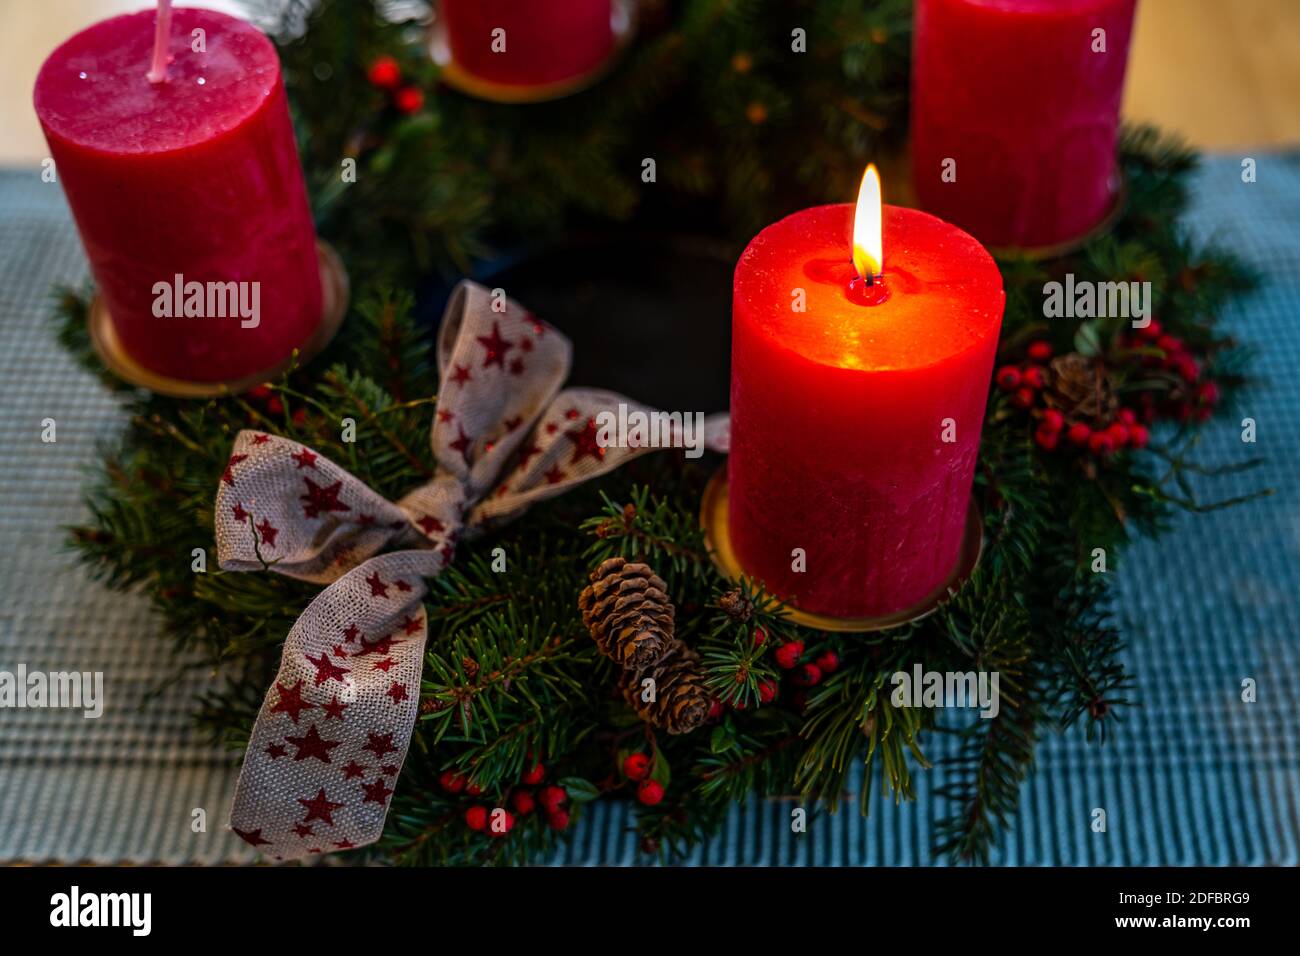 Adventskranz, erster Advent, brennende Kerze, Tannenkranz mit Schlaufe, Fichtenzweig, Lärchenzapfen, rote Beeren, first advent,  advent wreath Stock Photo